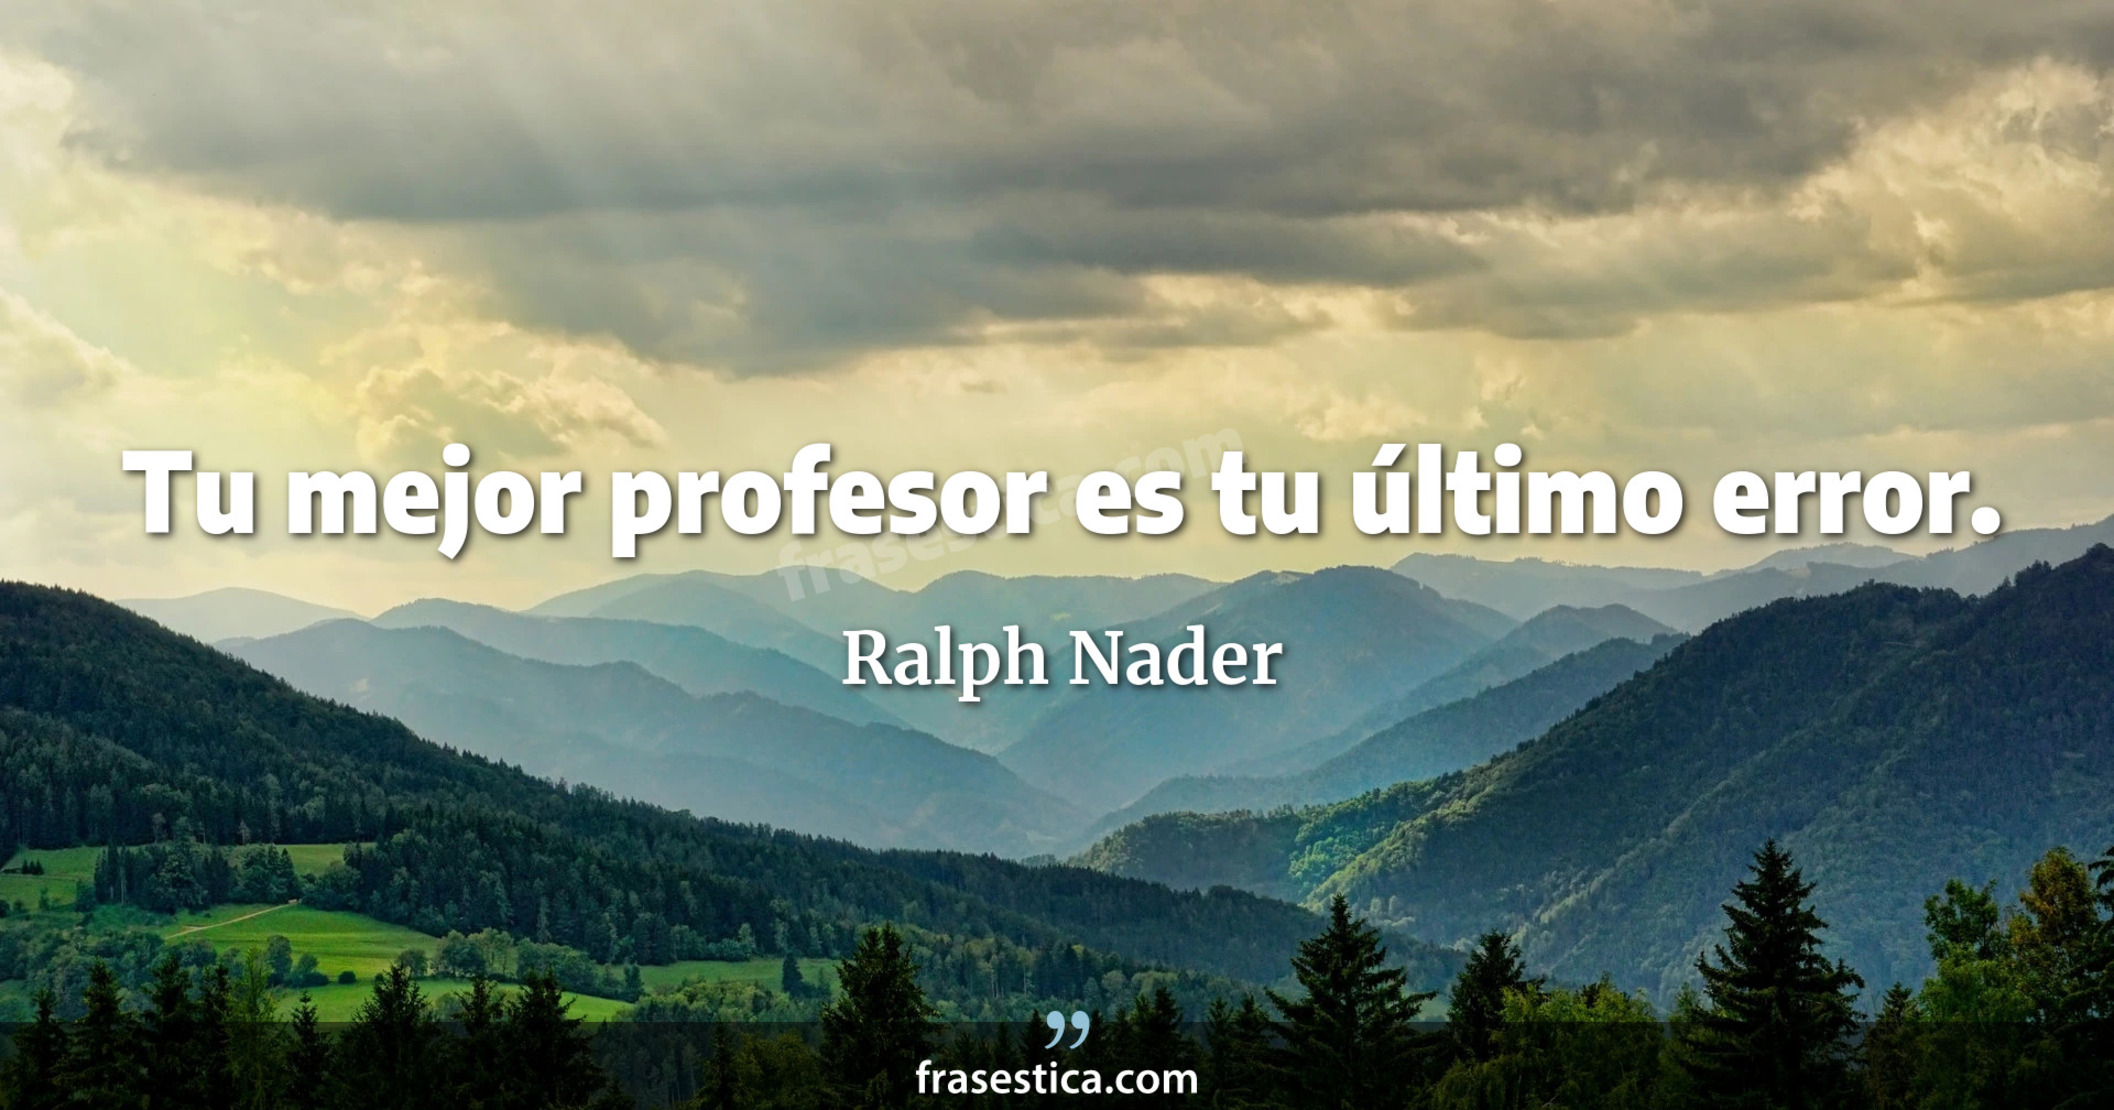 Tu mejor profesor es tu último error. - Ralph Nader